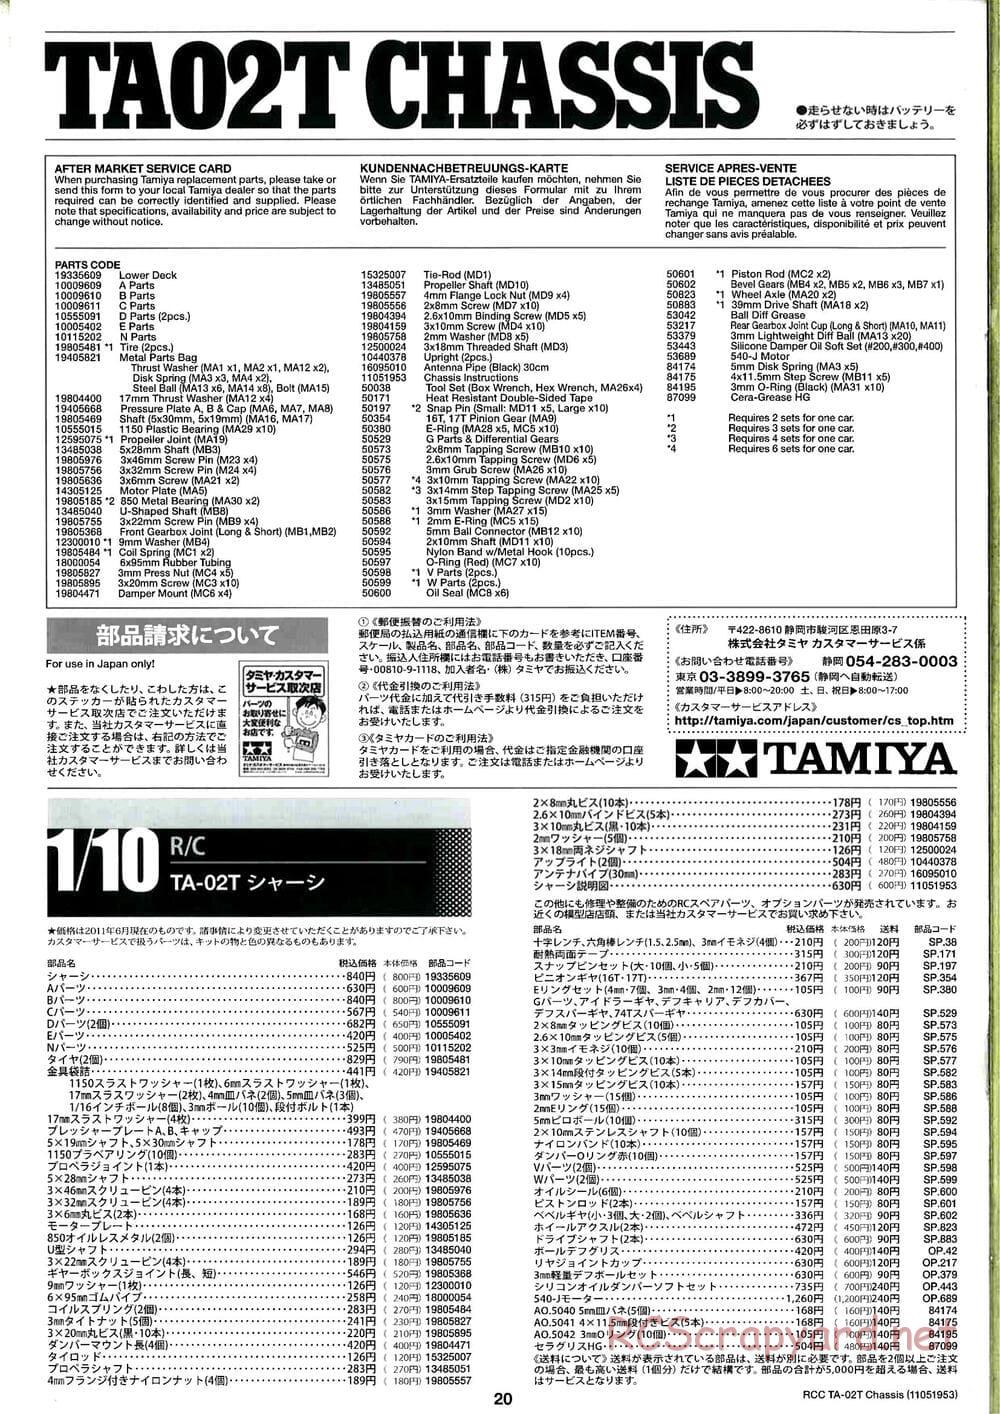 Tamiya - TA-02T Chassis - Manual - Page 20